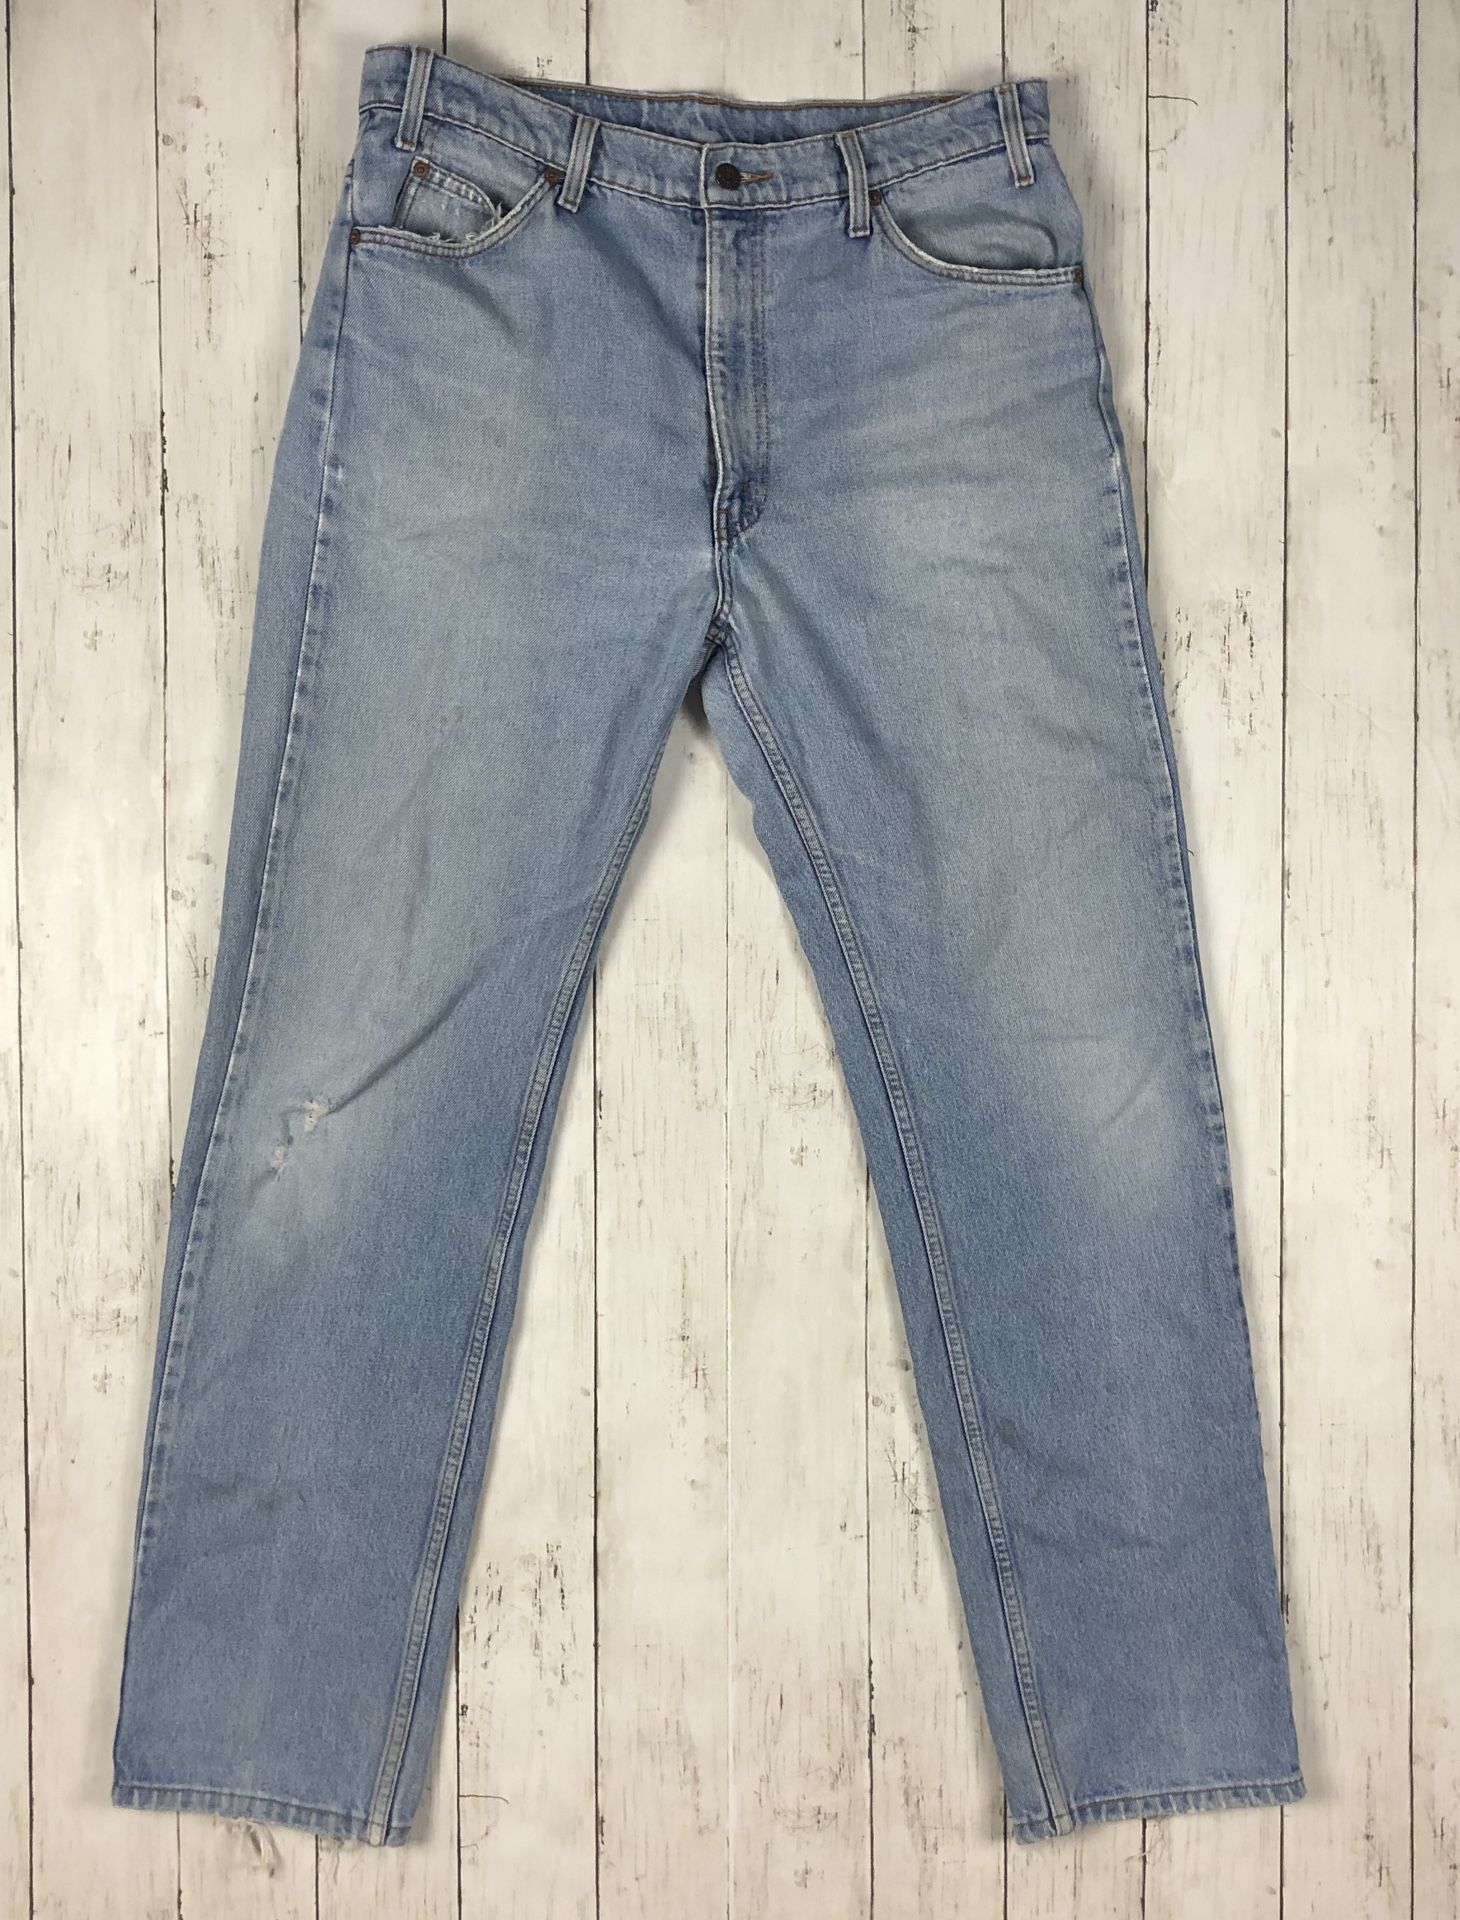 Vintage Levi’s 505 Orange Tab Lightwash Denim Jeans